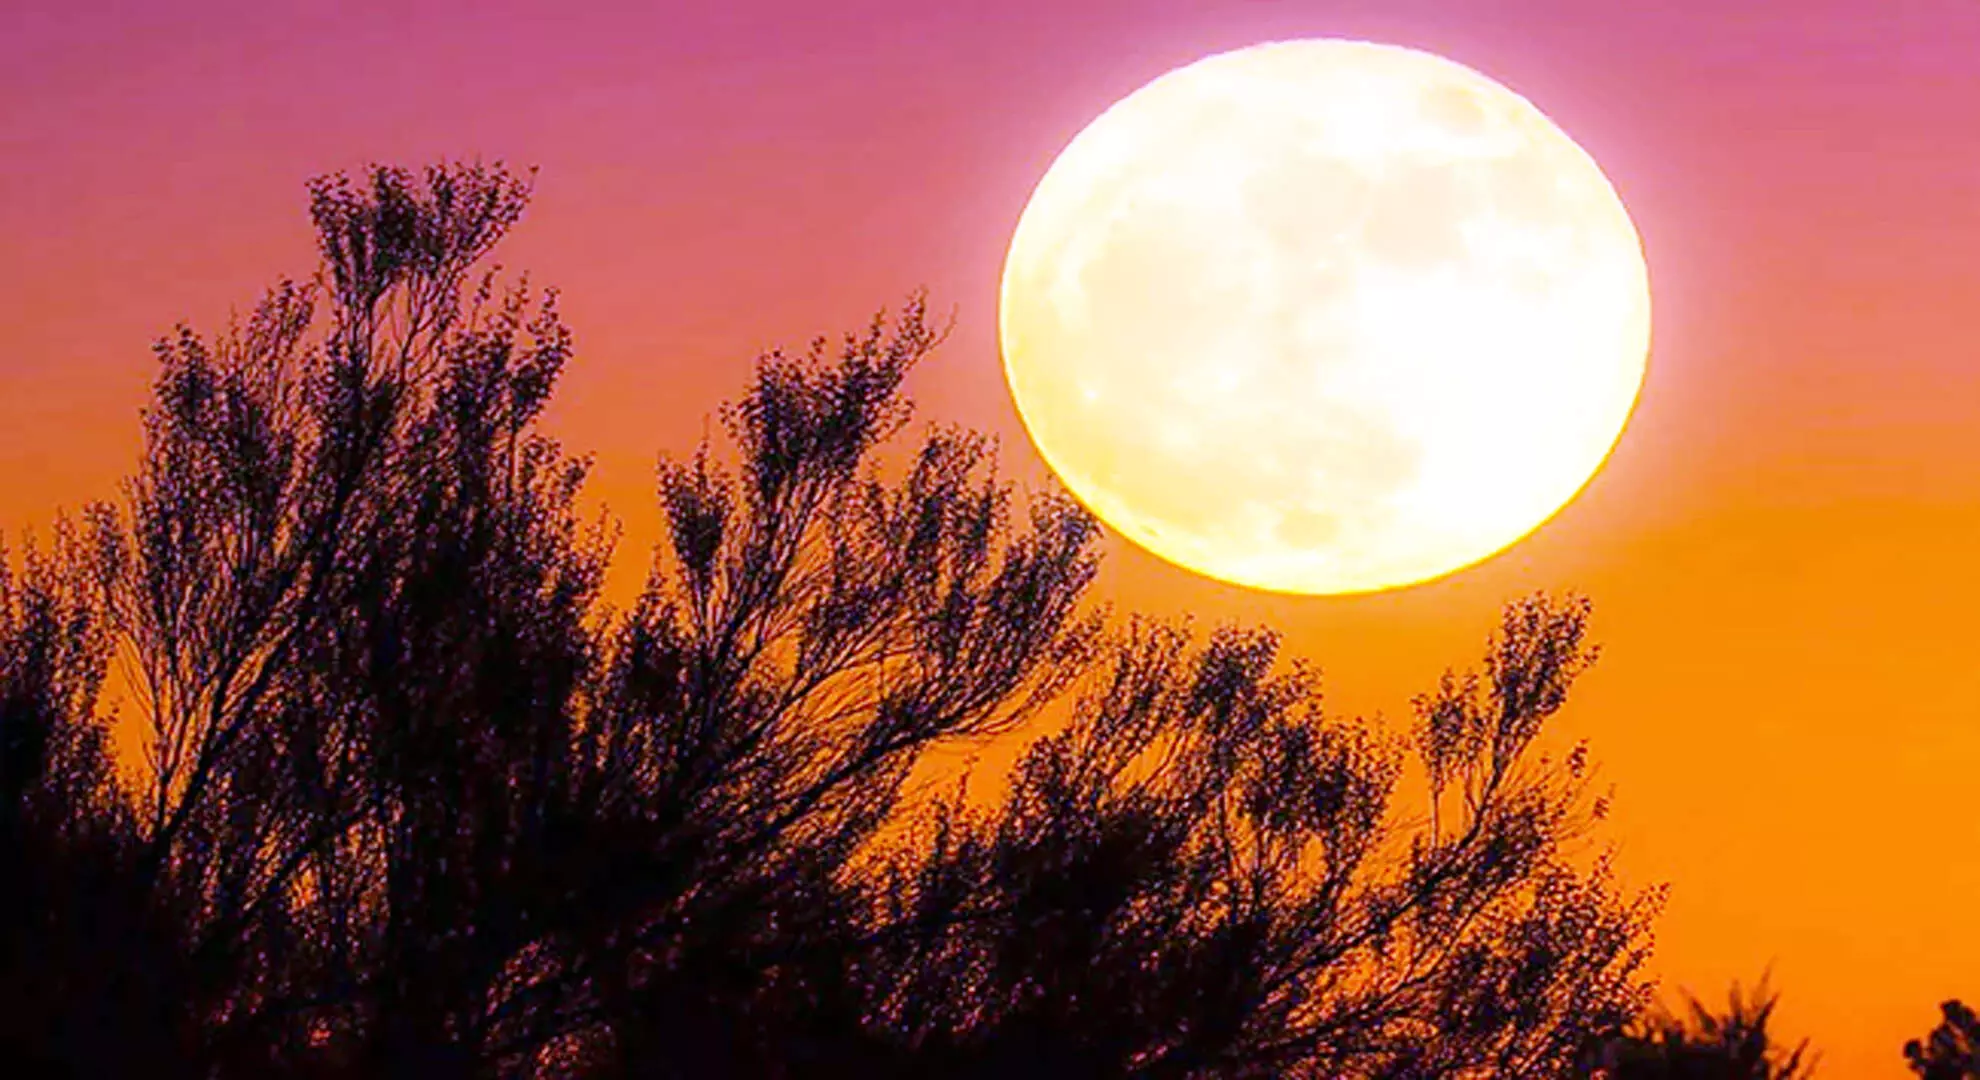 कृमि चंद्रमा क्या है और यह वसंत ऋतु की शुरुआत क्यों दर्शाता है